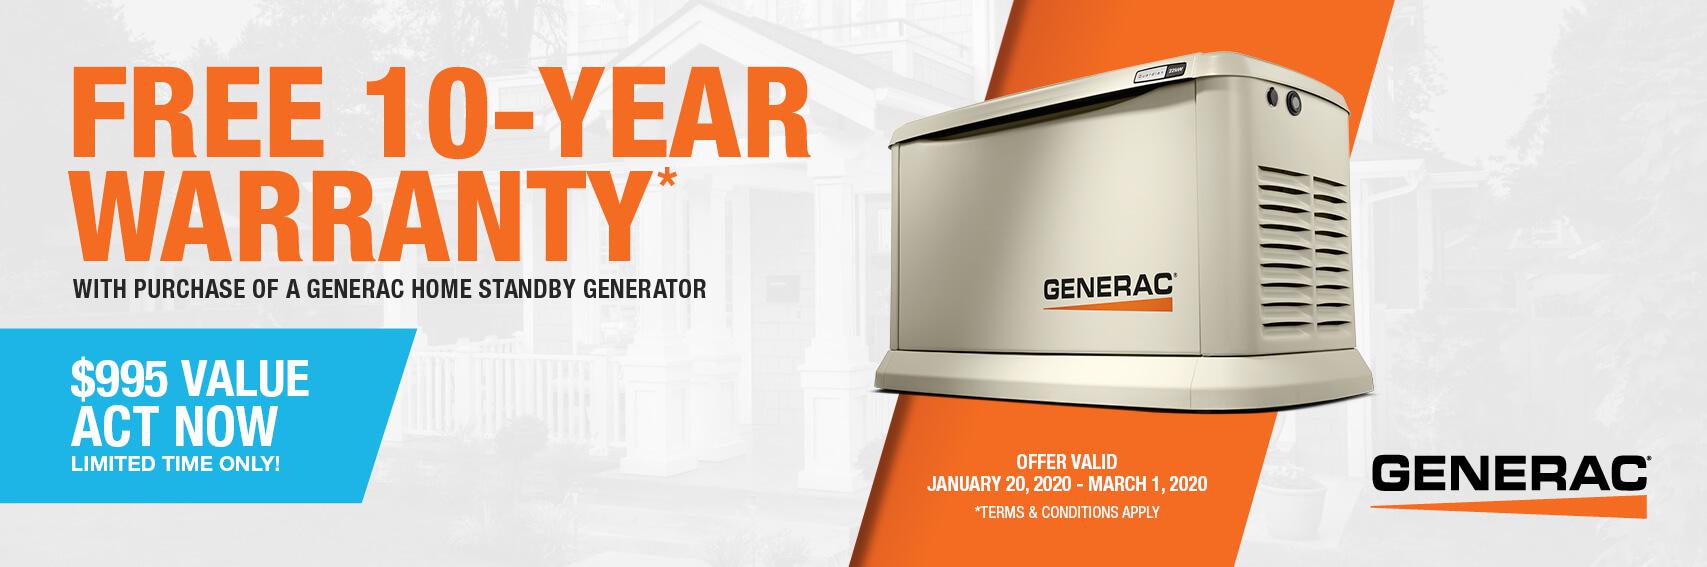 Homestandby Generator Deal | Warranty Offer | Generac Dealer | Valhalla, NY